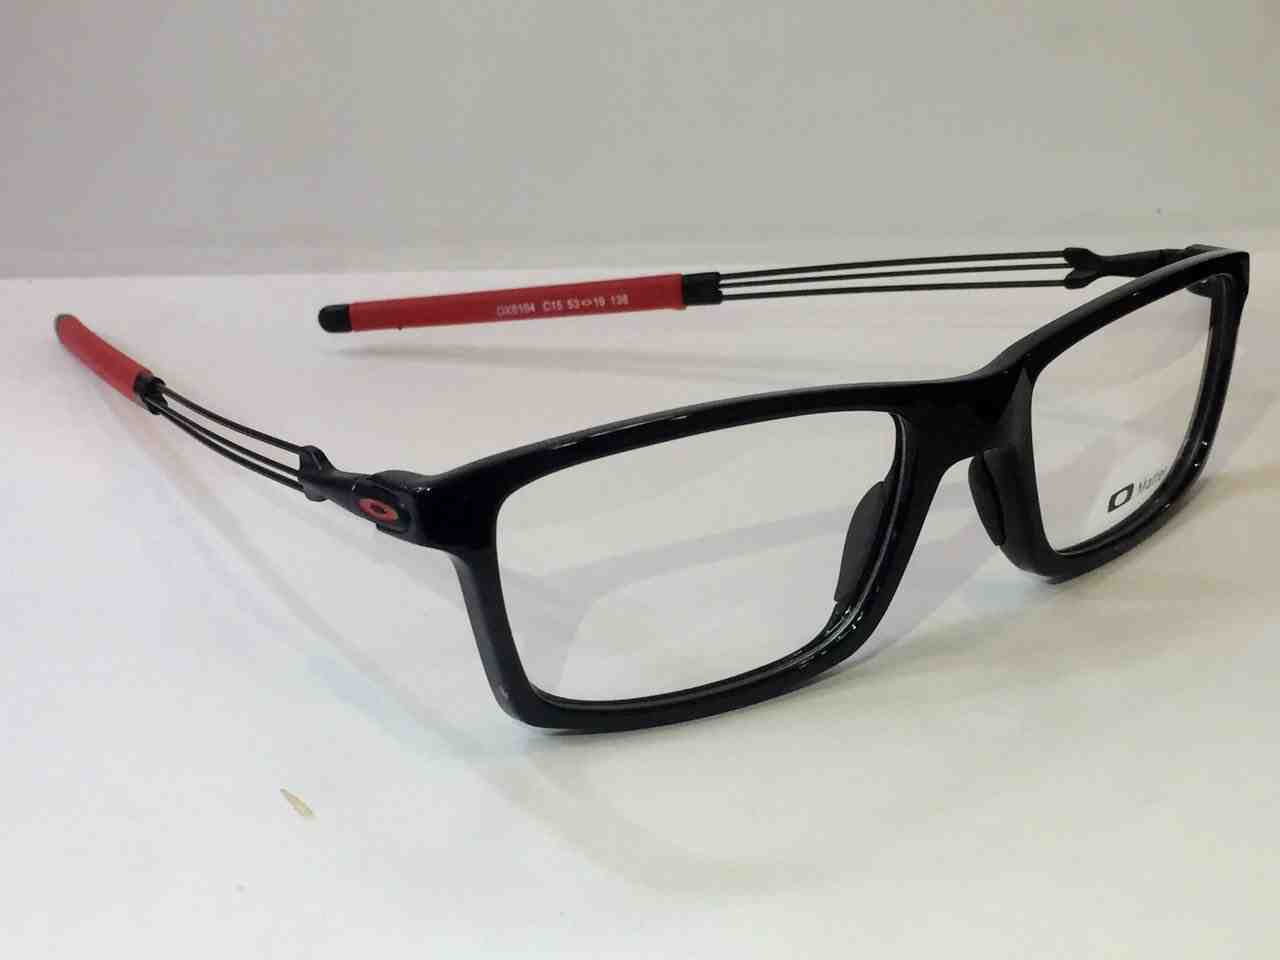 Jual Frame Kacamata Oakley 3 Baru eyewear Terbaru Murah 